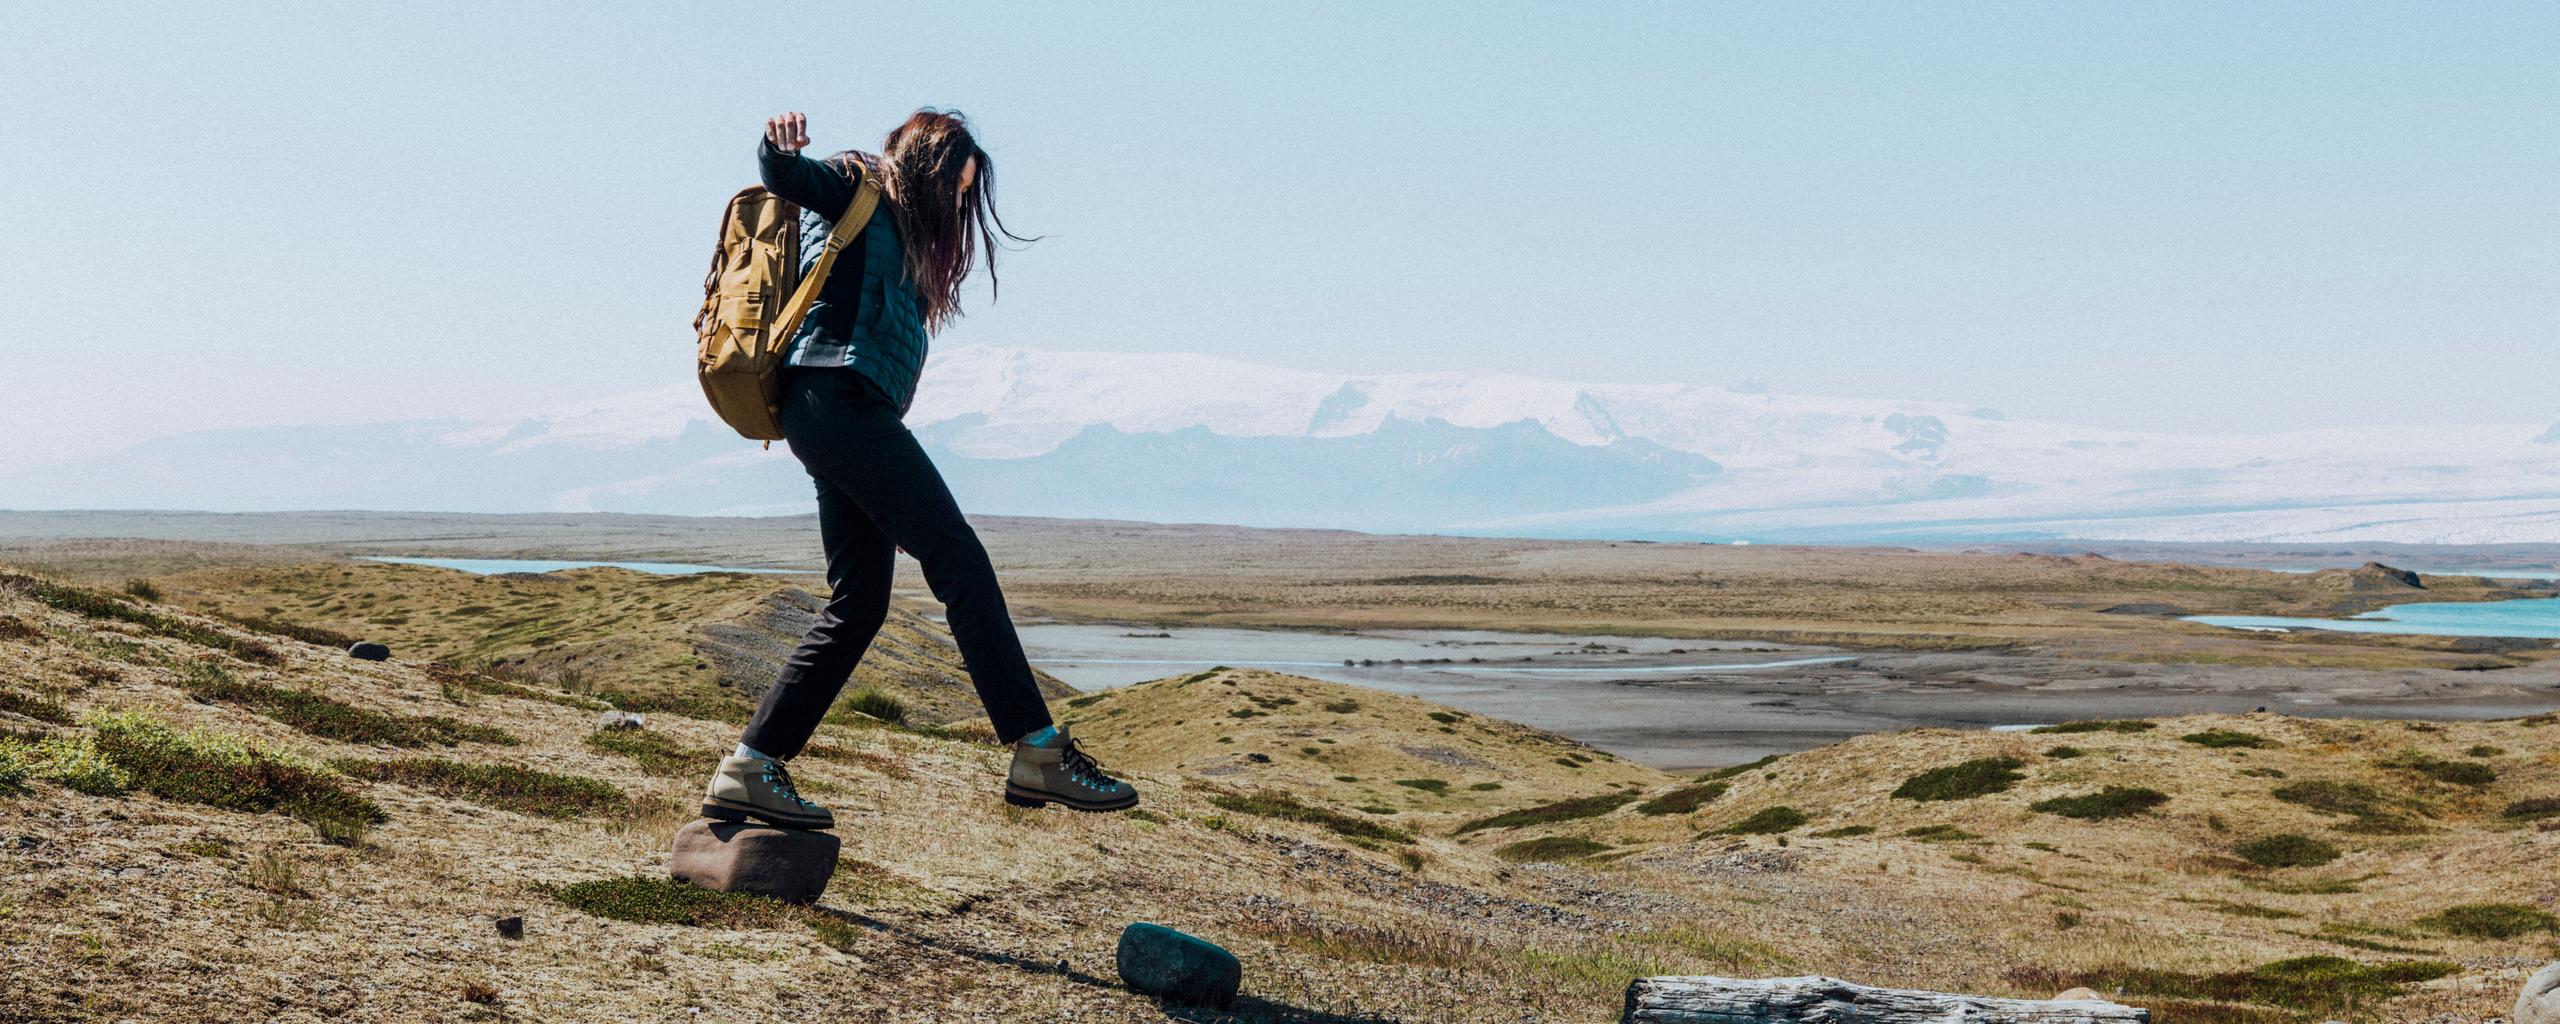 Woman walking on grassy landscape in Iceland